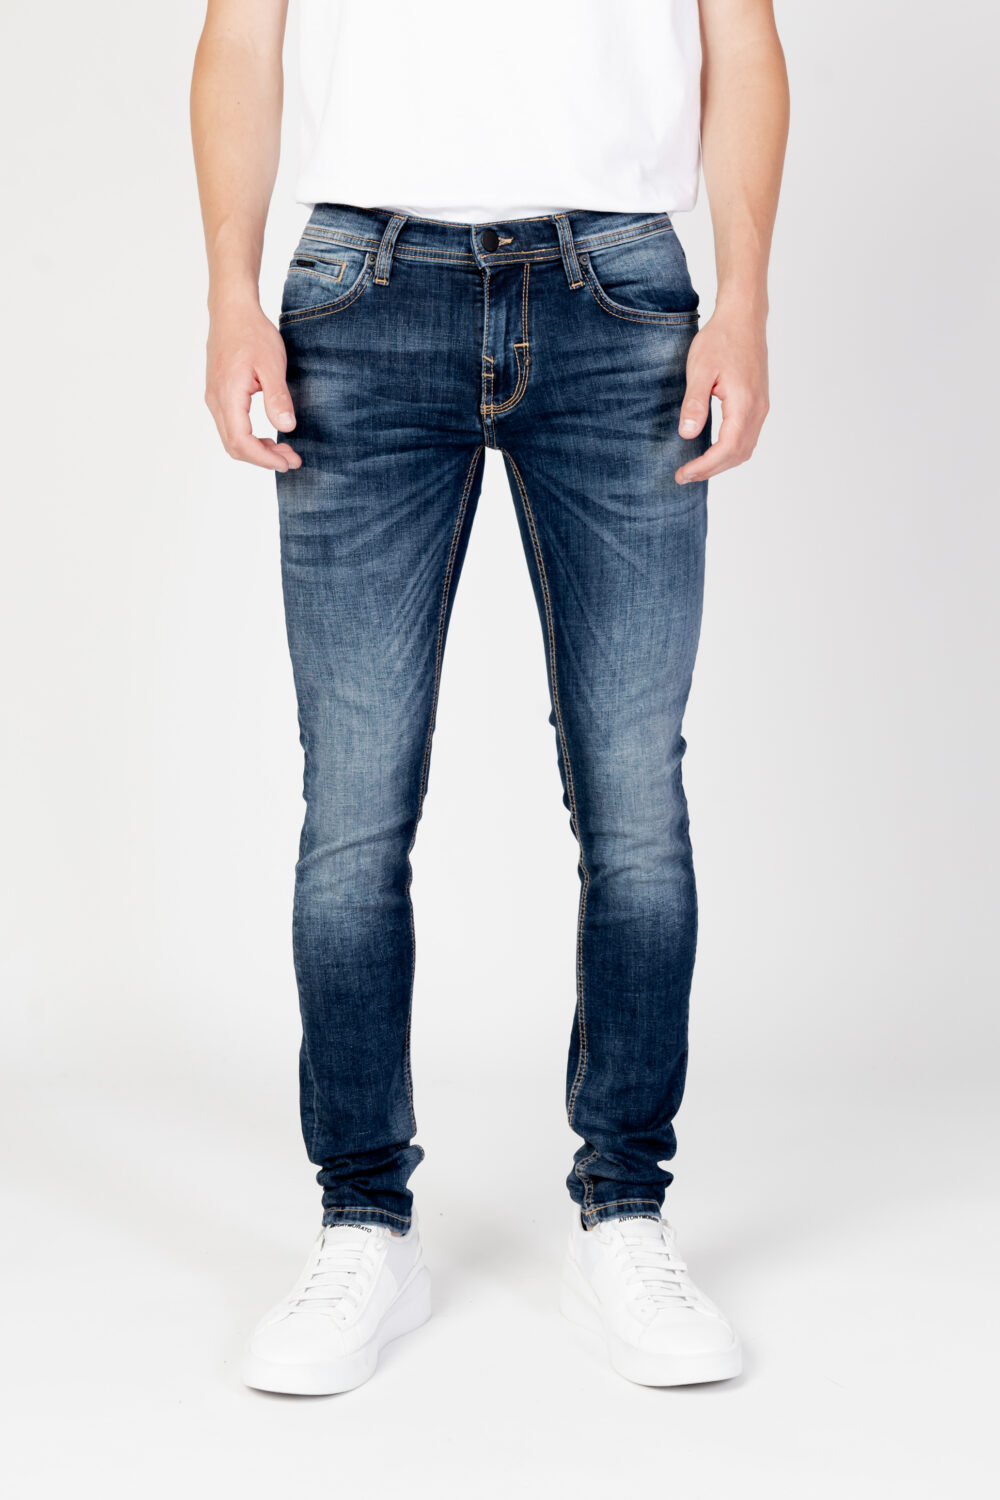 Jeans skinny Antony Morato gilmour super Denim - Foto 6